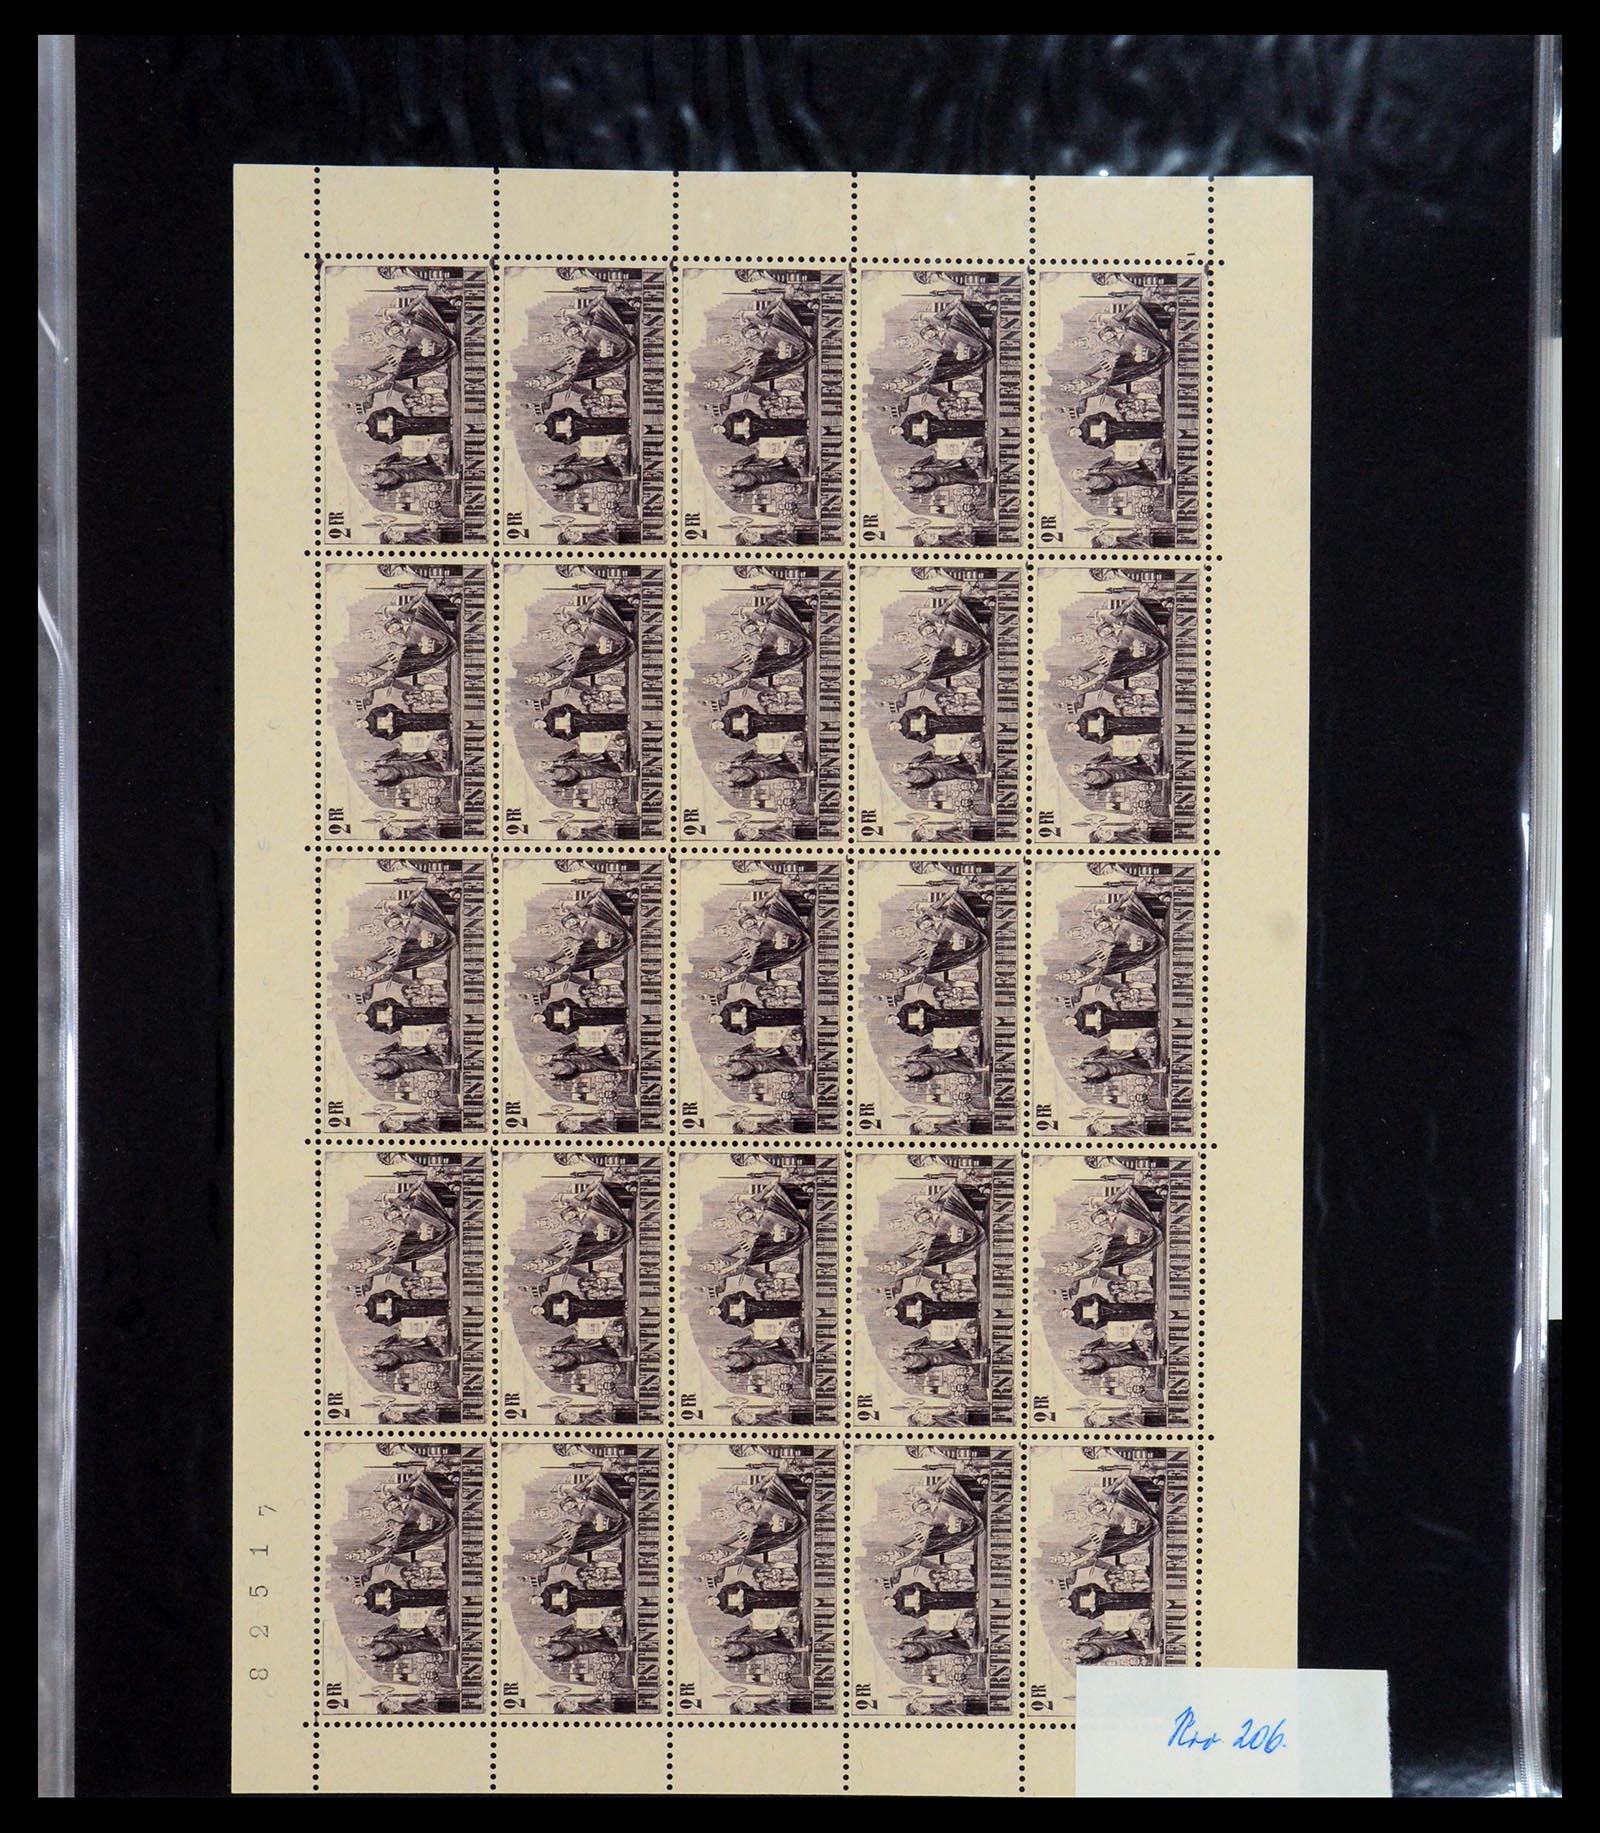 36280 020 - Stamp collection 36280 Liechtenstein souvenir sheets and sheetlets 1934-